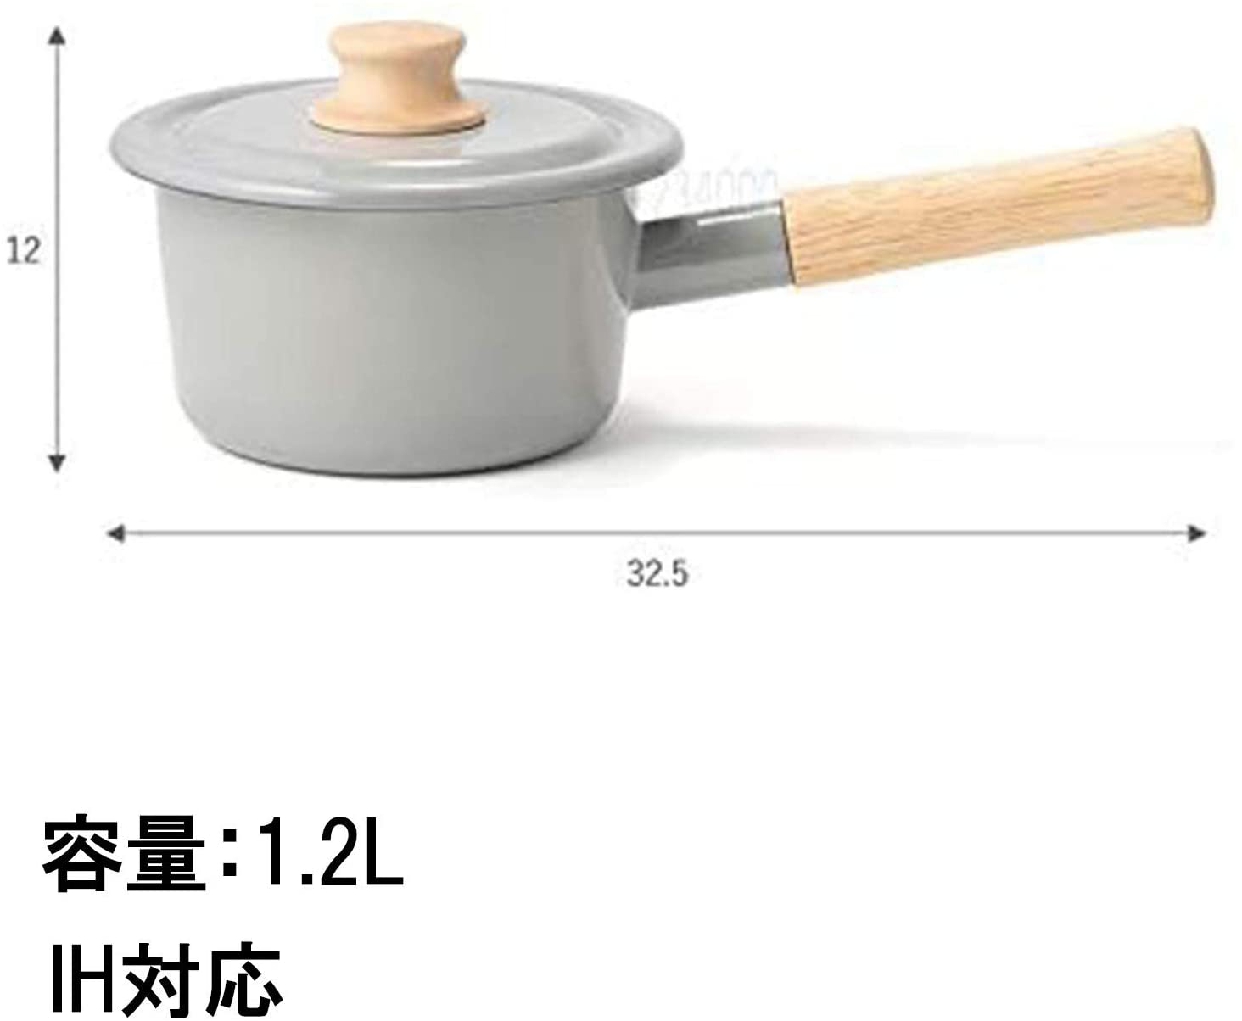 富士ホーロー(FUJIHORO) コットンシリーズ ミルクパン CTN14Mの商品画像サムネ5 